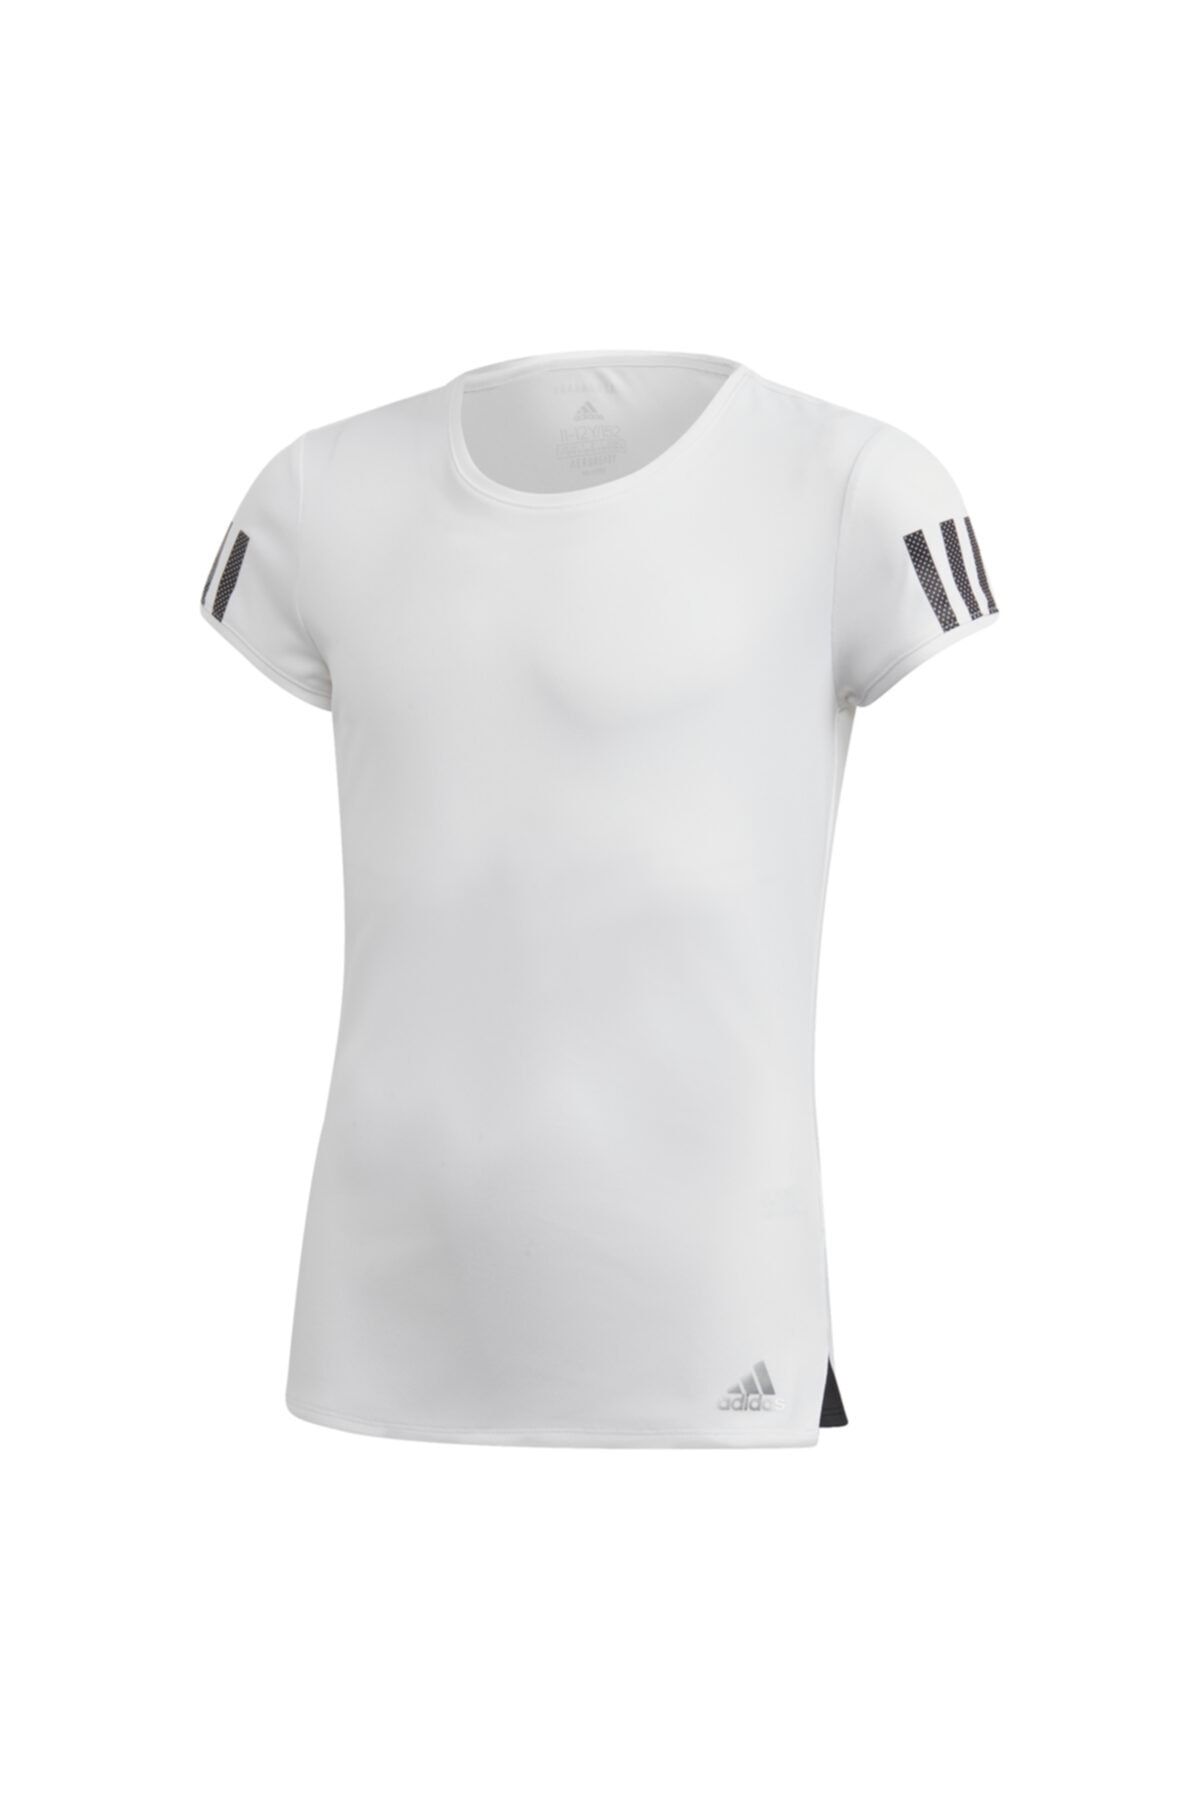 adidas G CLUB TEE Beyaz Kız Çocuk T-Shirt 101069112